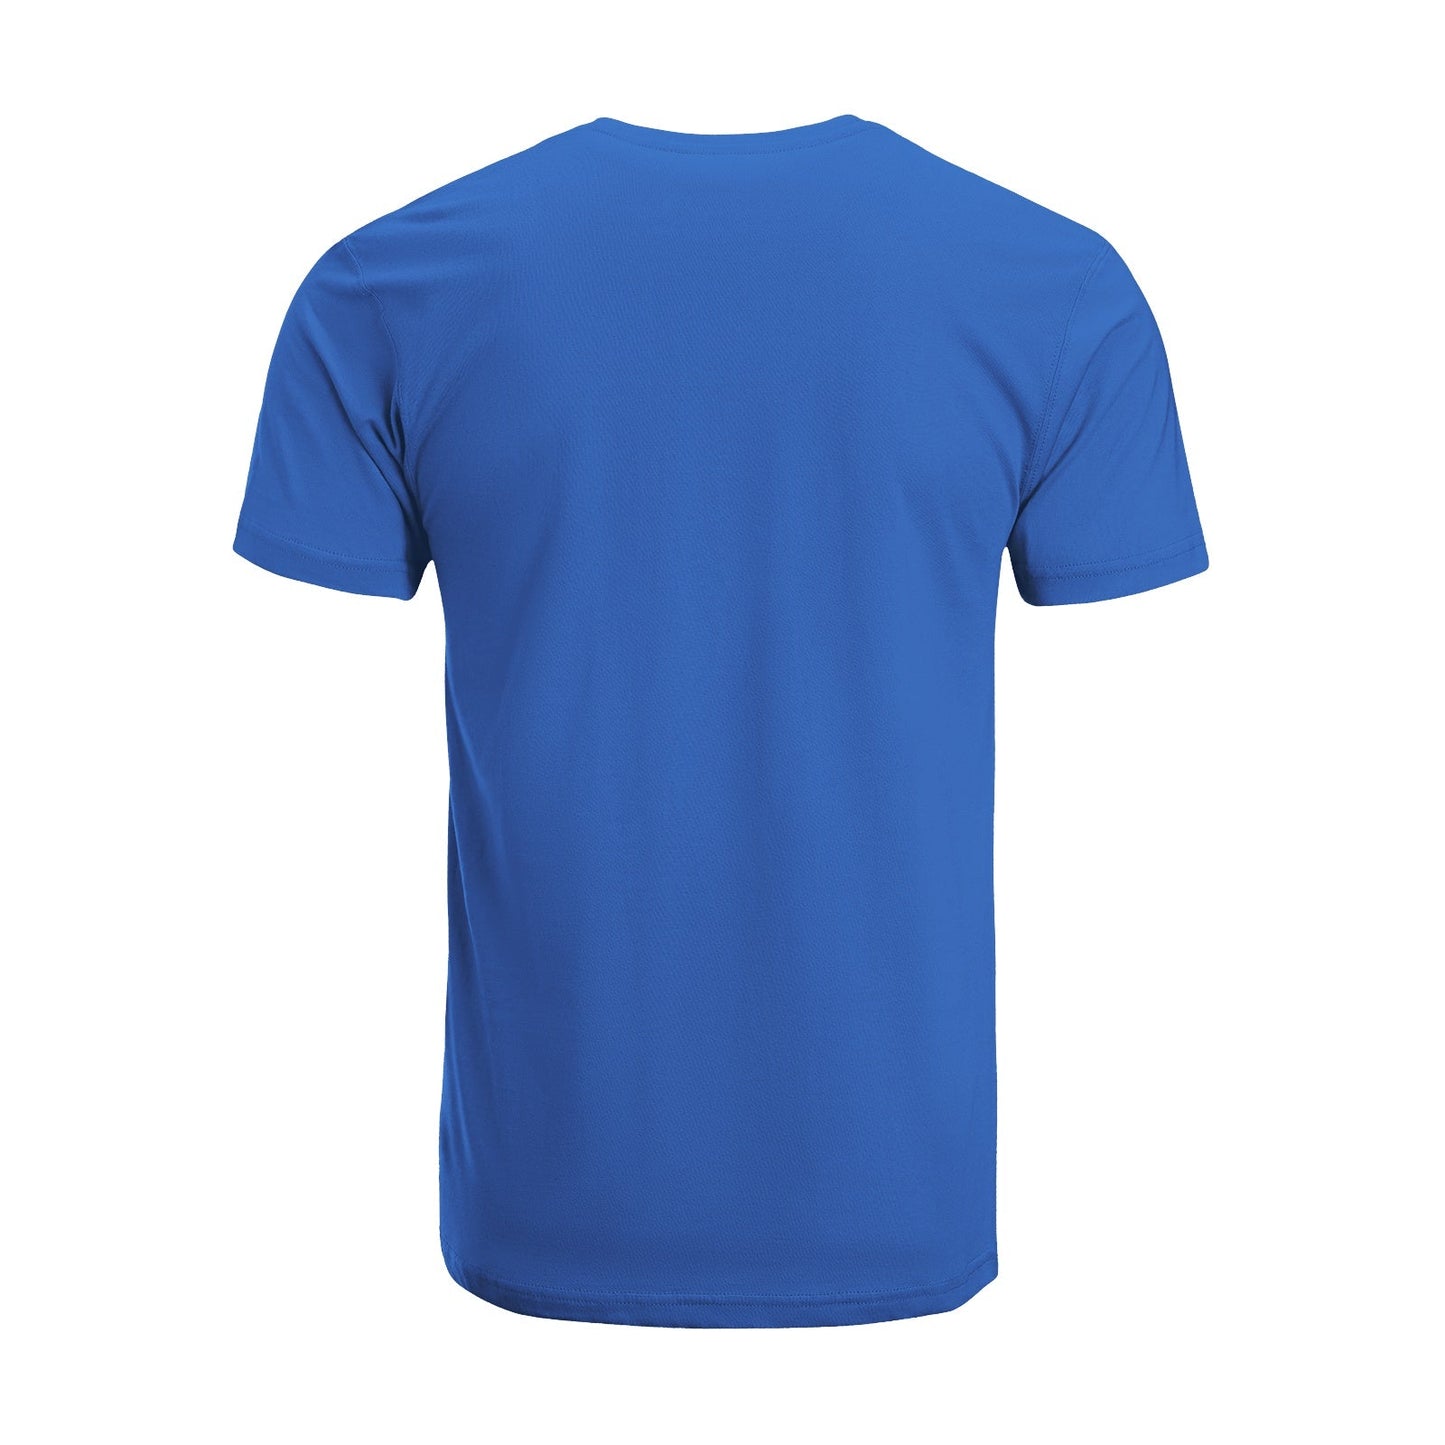 Unisex Short Sleeve Crew Neck Cotton Jersey T-Shirt TRUCK 14